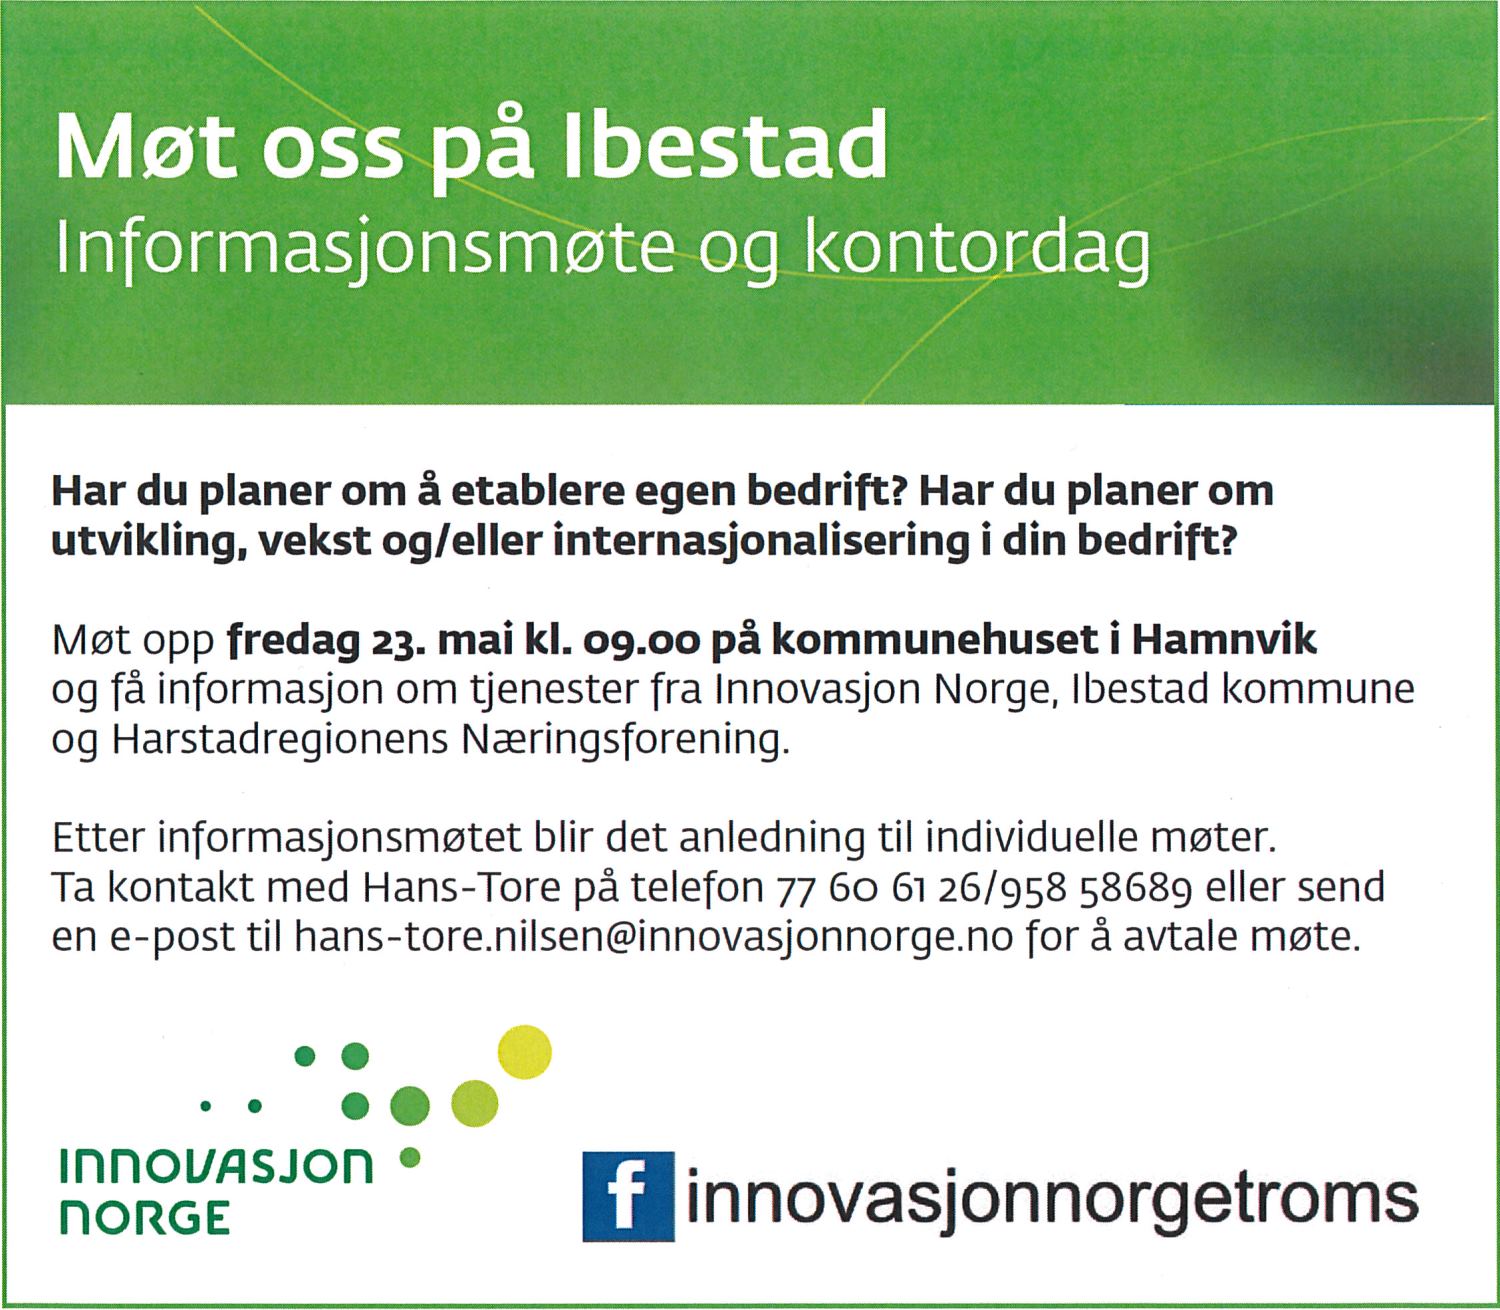 2014-05-23 Informasjonsmøte og kontordag Ibestad - annonse 1500x1310.jpg